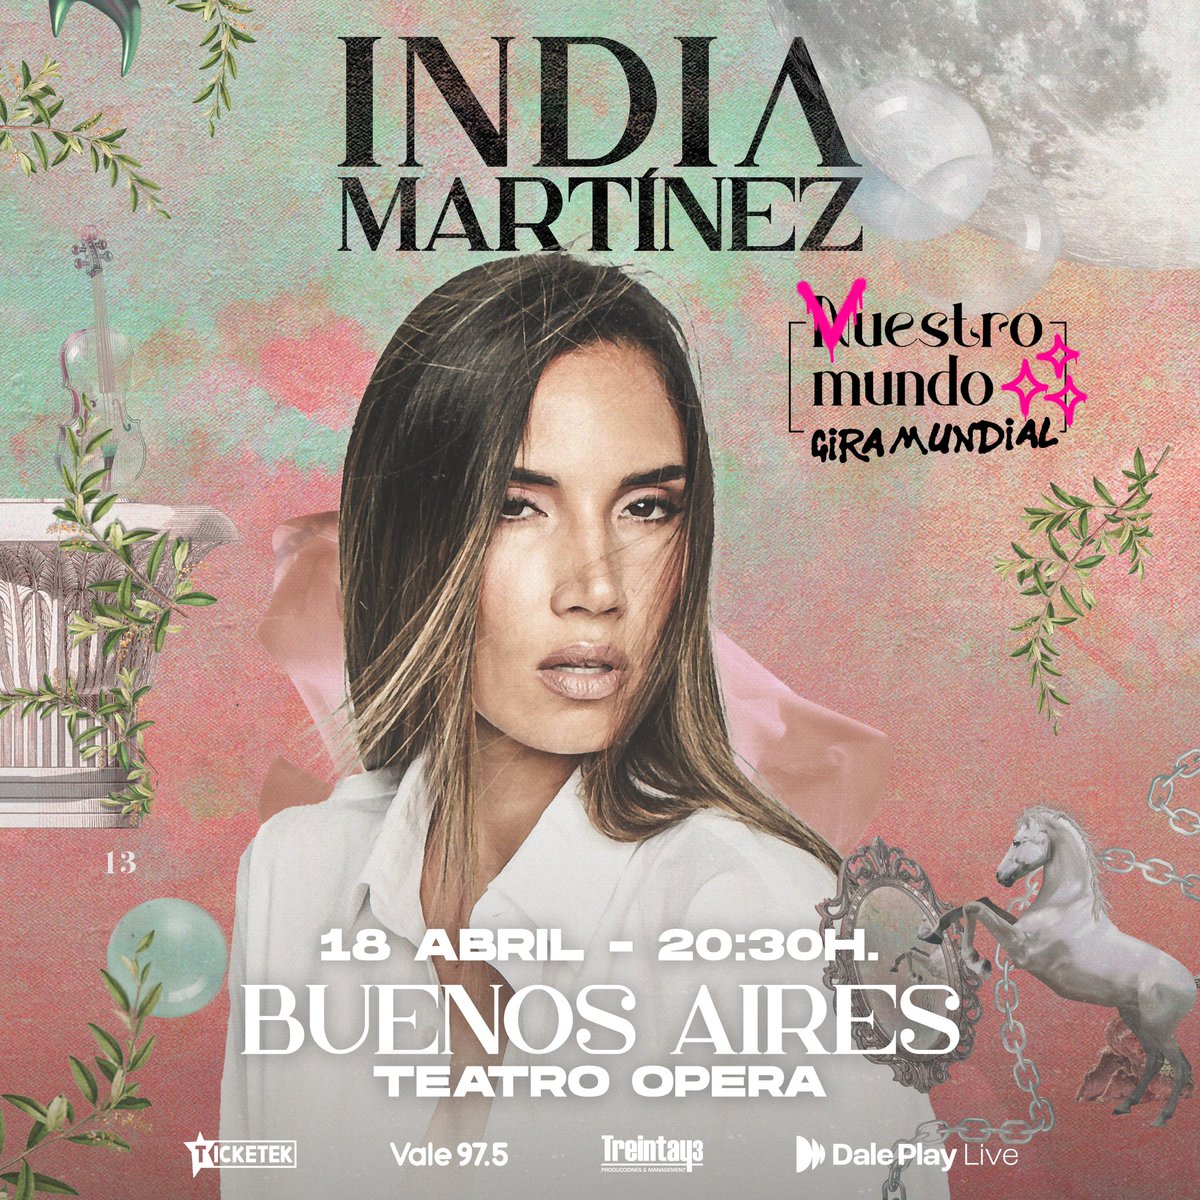 BUENOS AIRES!!! ARGENTINA!!!! entradas ya a la venta!!! Qué ganas te tenia!! 🙌🏽🙌🏽🙌🏽 ticketek.com.ar/india-martinez…